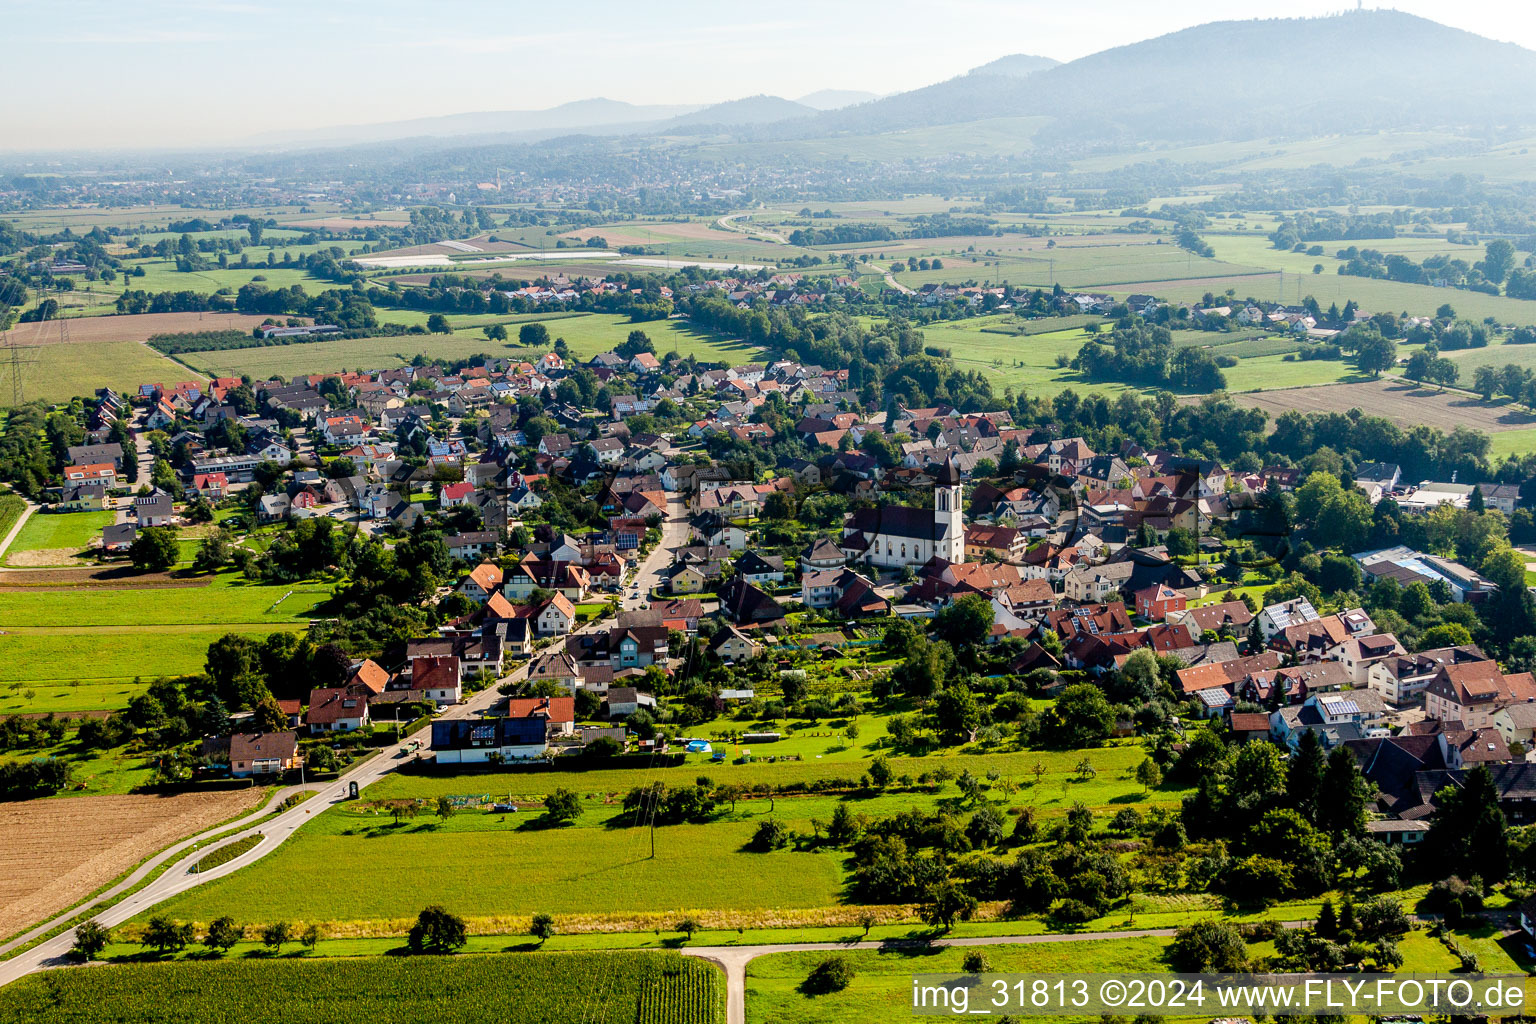 Dorf - Ansicht am Rande von landwirtschaftlichen Feldern und Nutzflächen in Weitenung in Bühl im Bundesland Baden-Württemberg, Deutschland